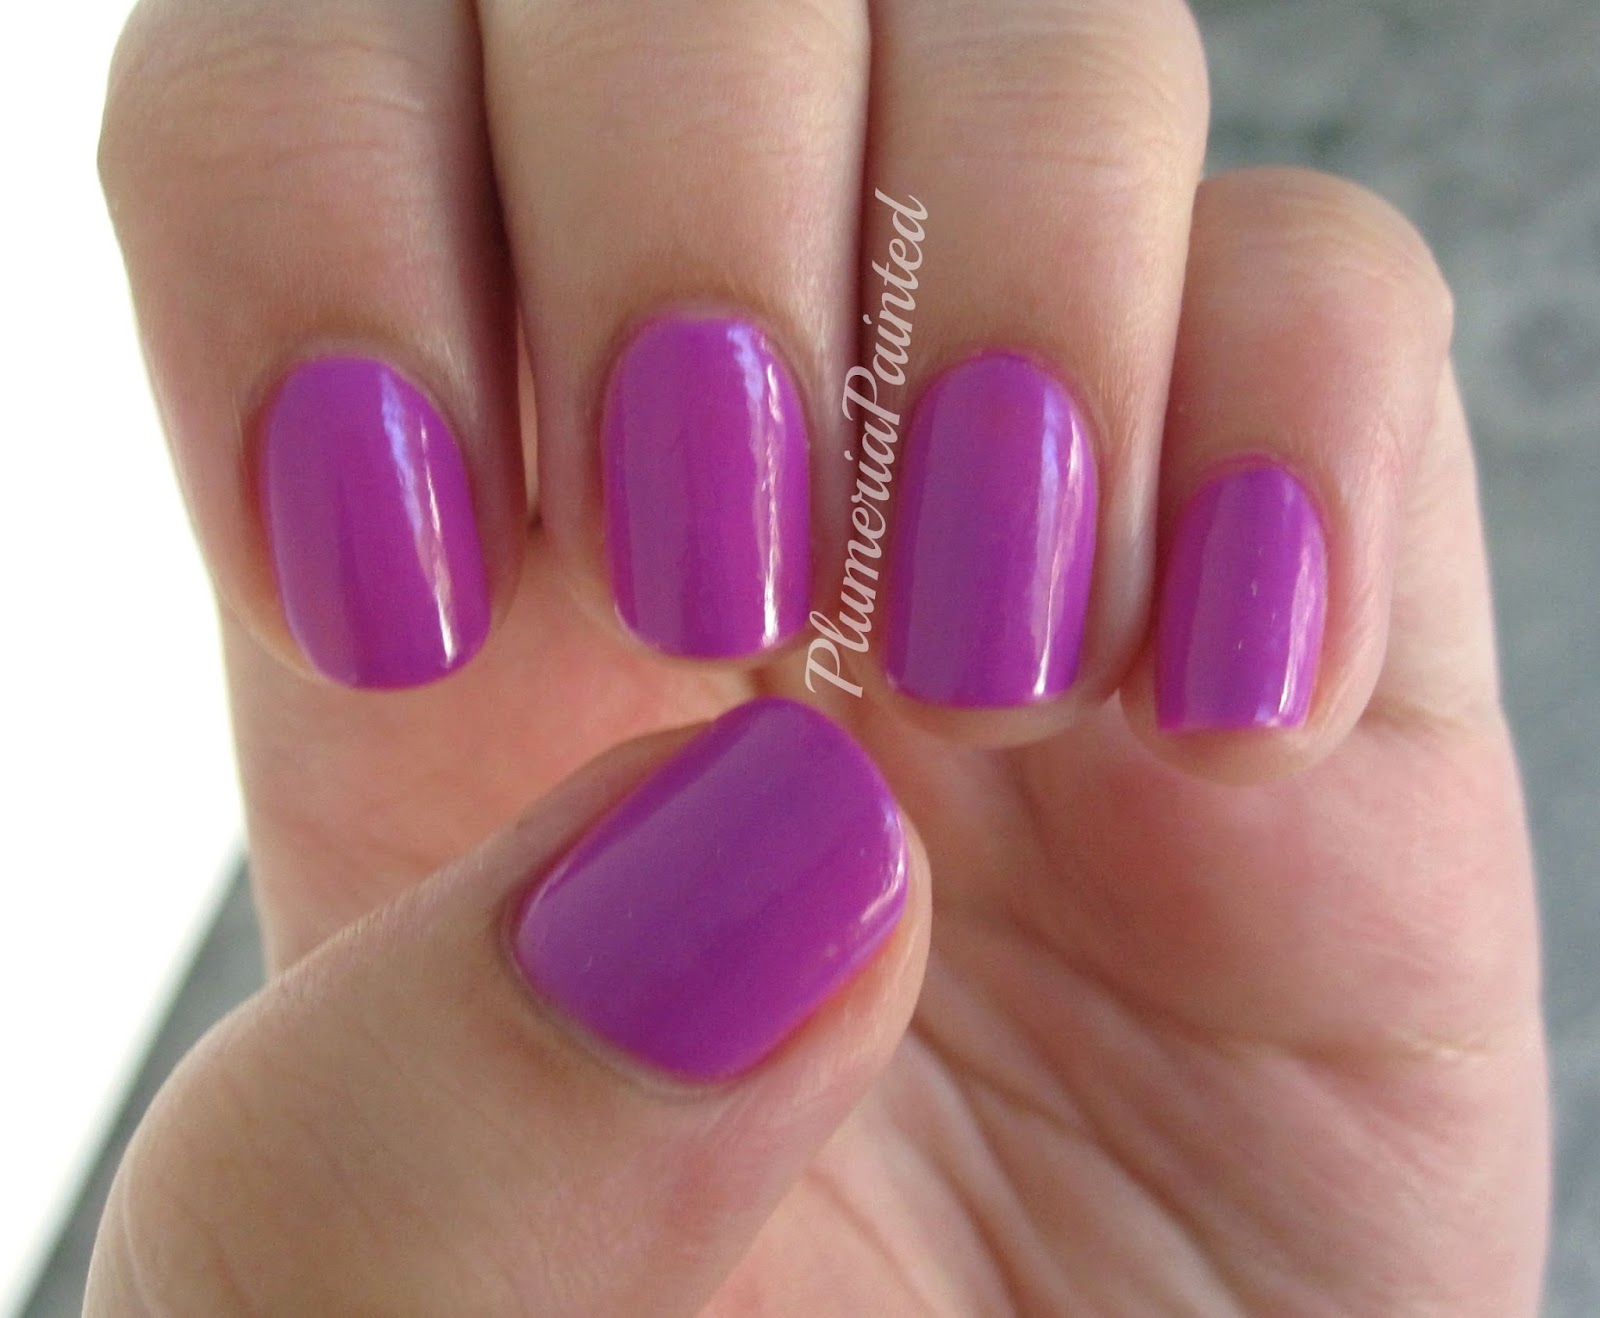 orly disney color individual nail polish